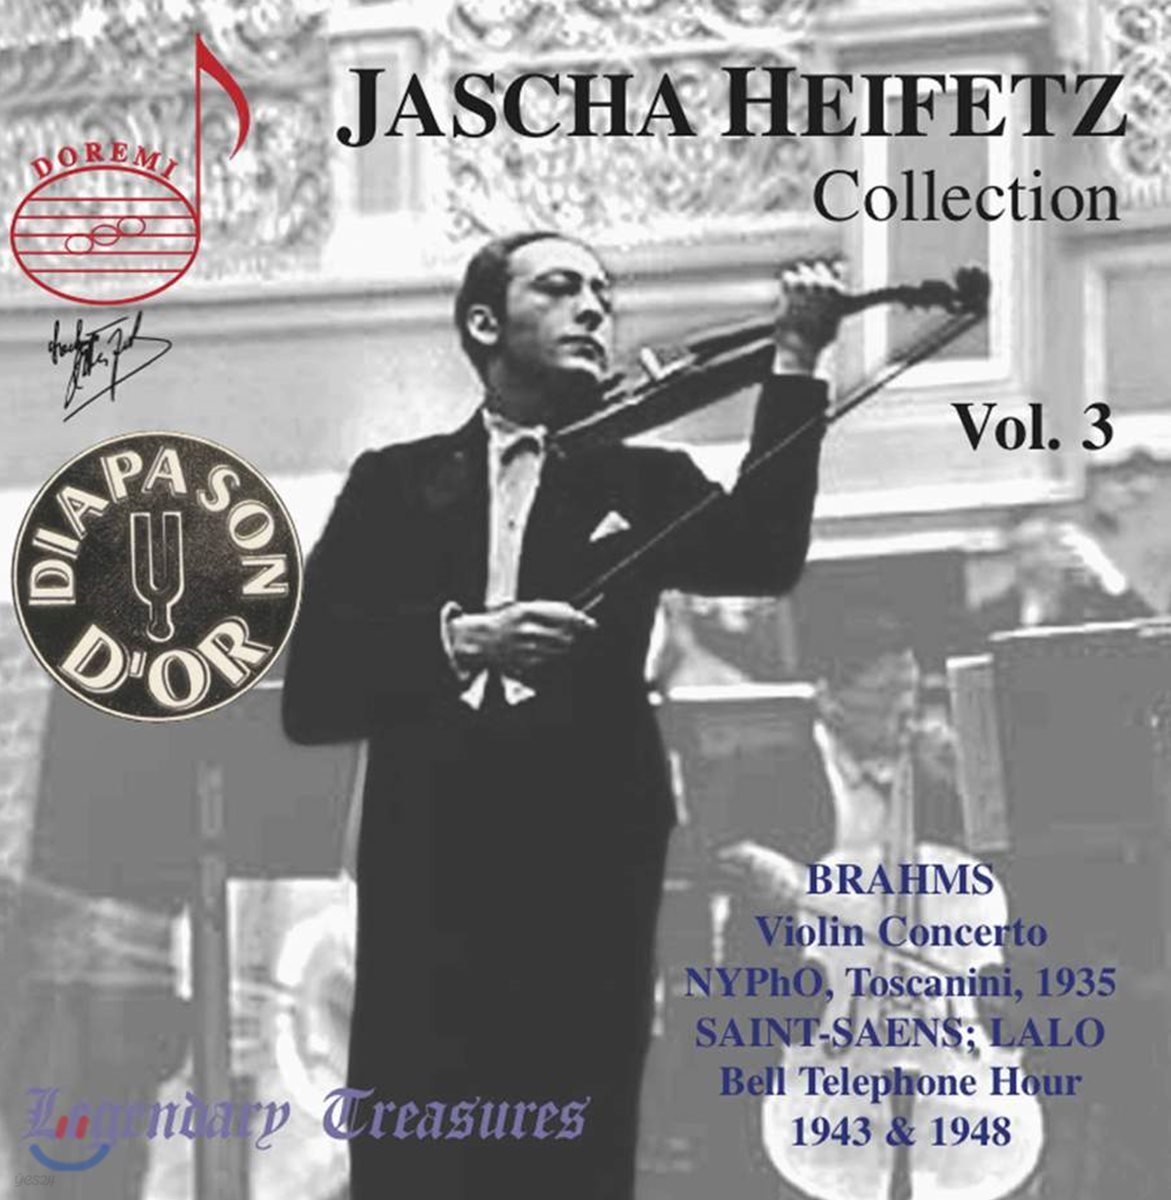 하이페츠 컬렉션 3집 (Jascha Heifetz Collection Vol. 3)